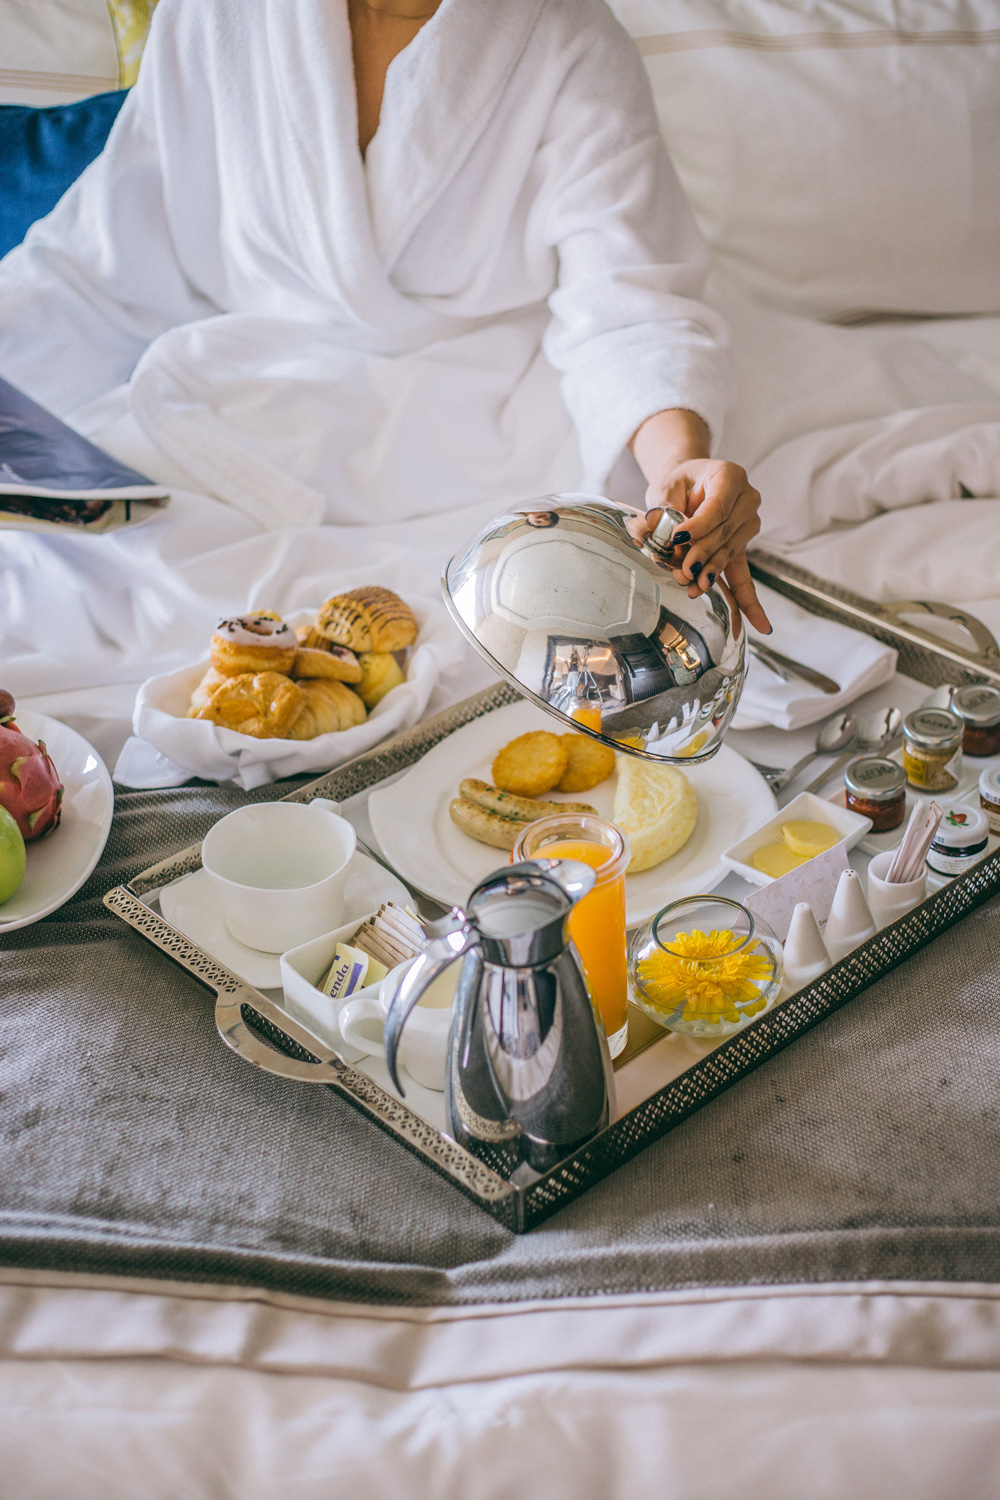 Shangri-la New Delhi Presidential Suite Breakfast in Bed